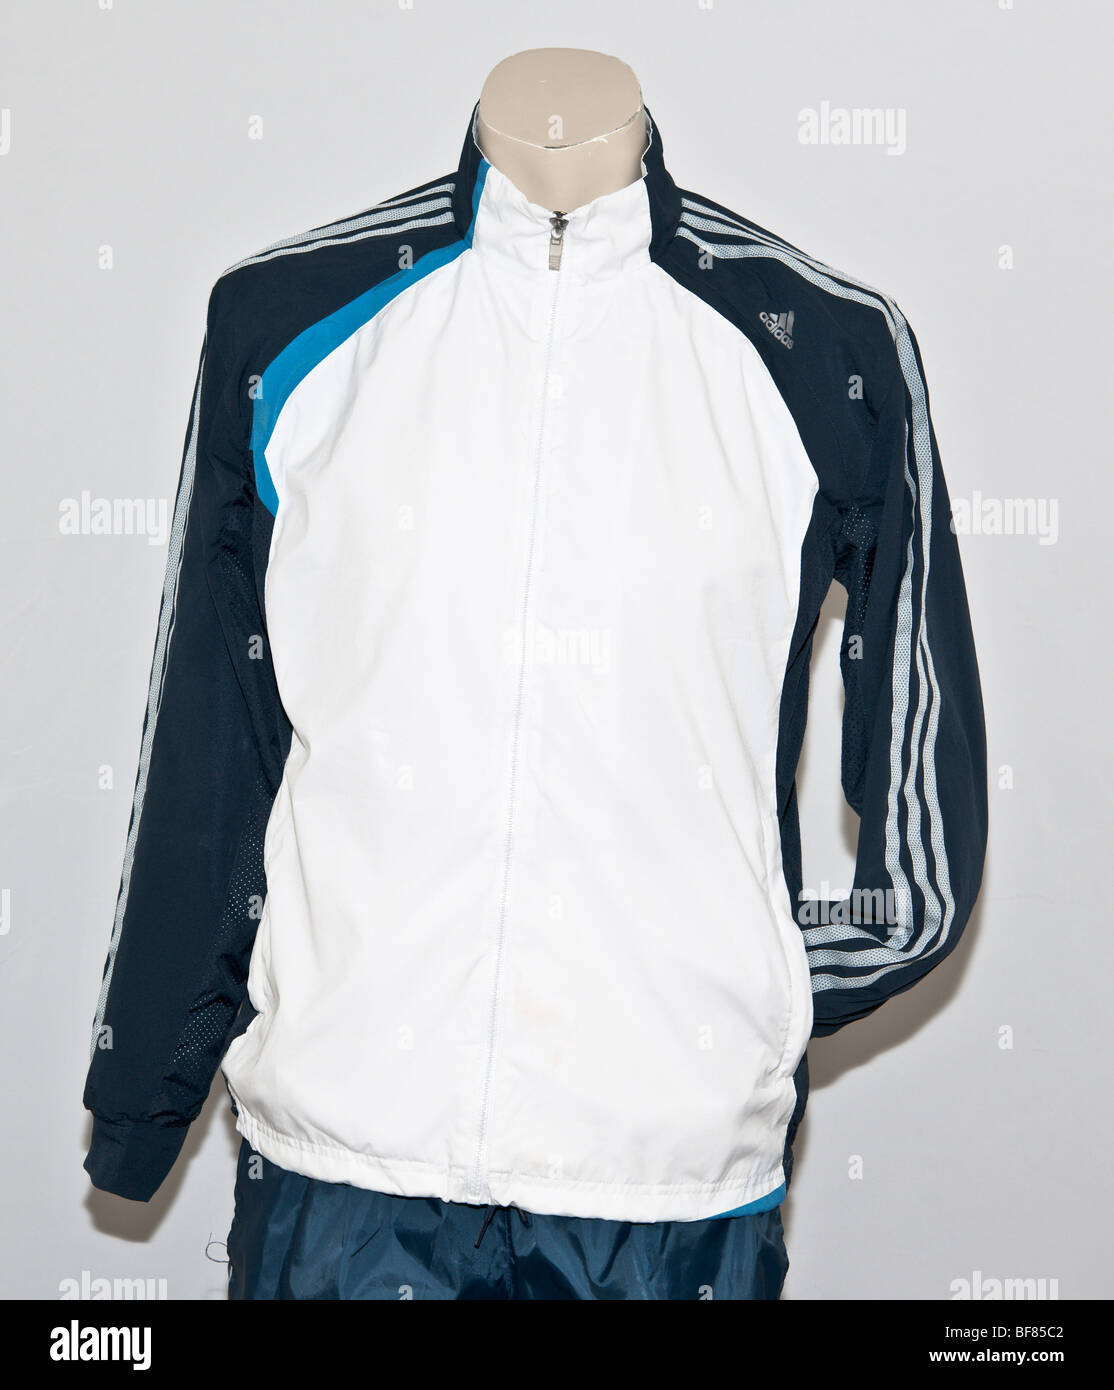 Adidas Jacke Stockfotos und -bilder Kaufen - Alamy